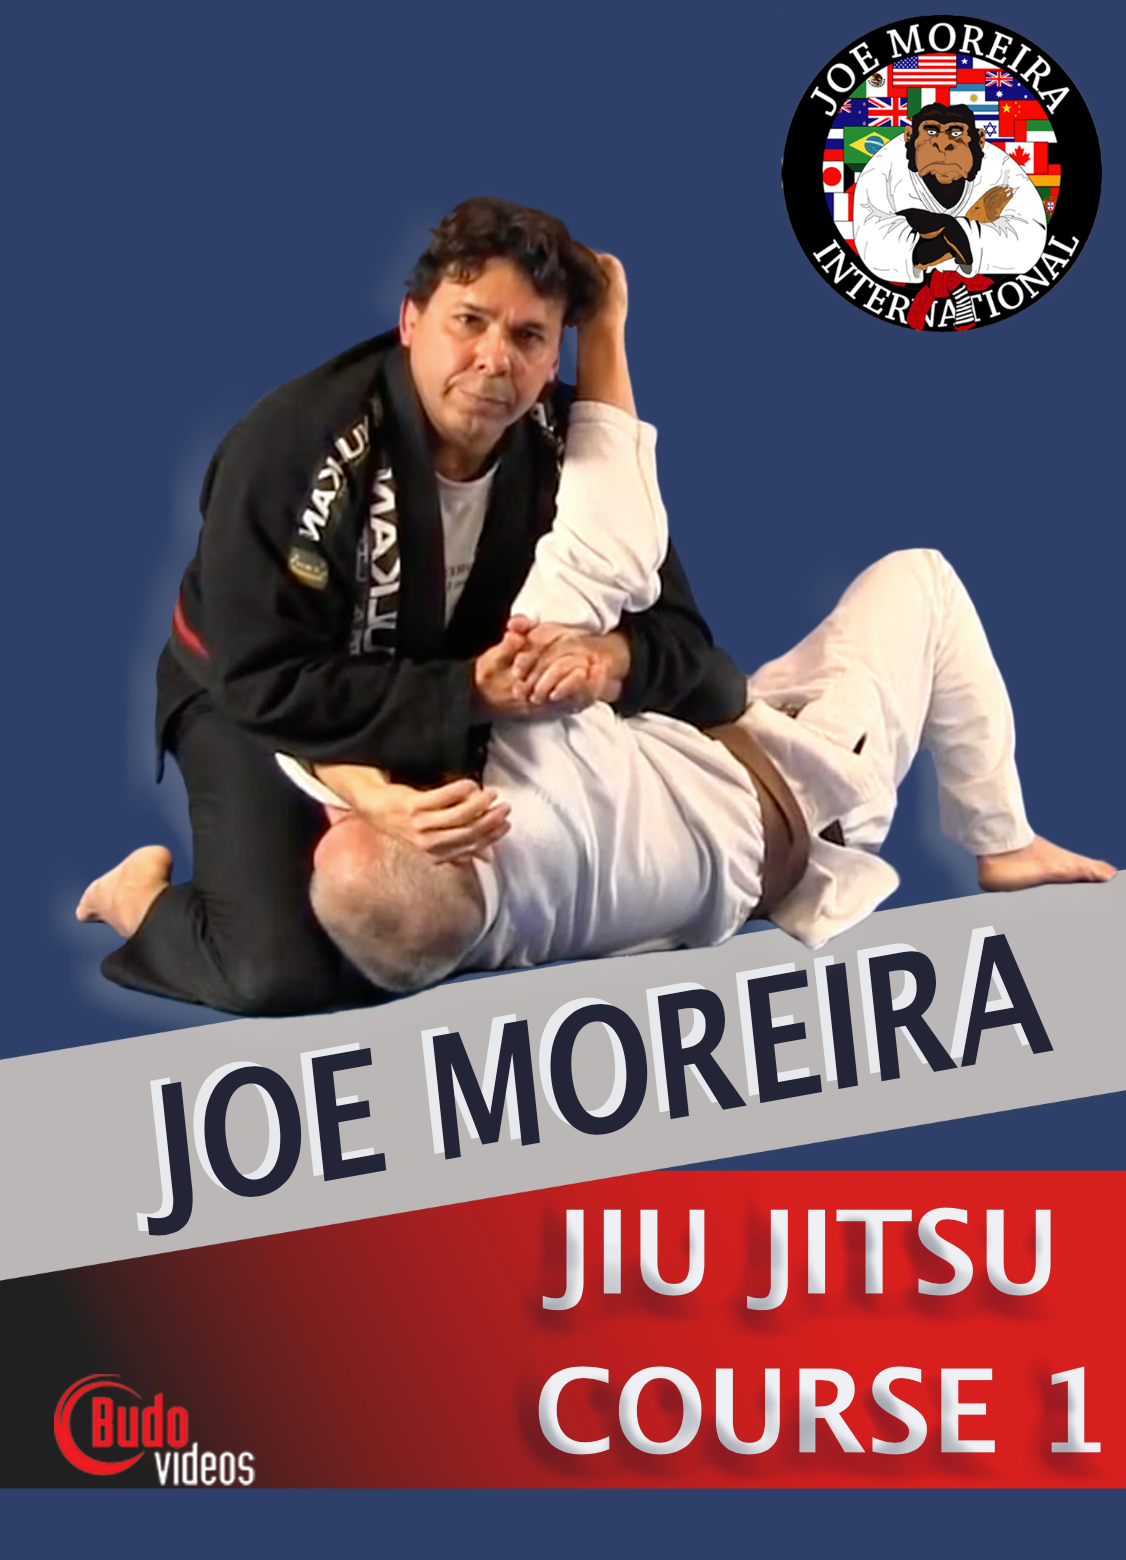 Joe Moreira Jiu Jitsu Curso 1 (Bajo Demanda)